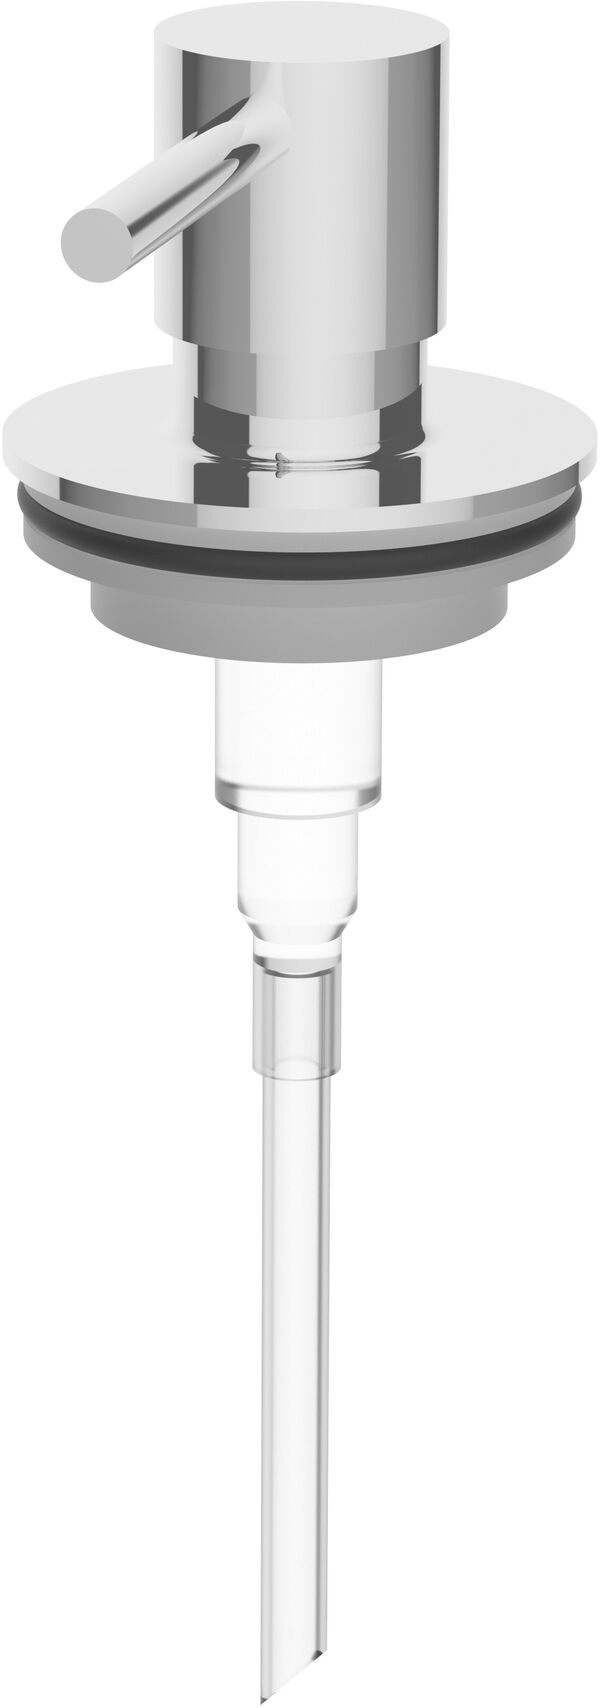 Pompa per distributore Alterna nonda, di sapone per distributore (BA79VC831) image number 0